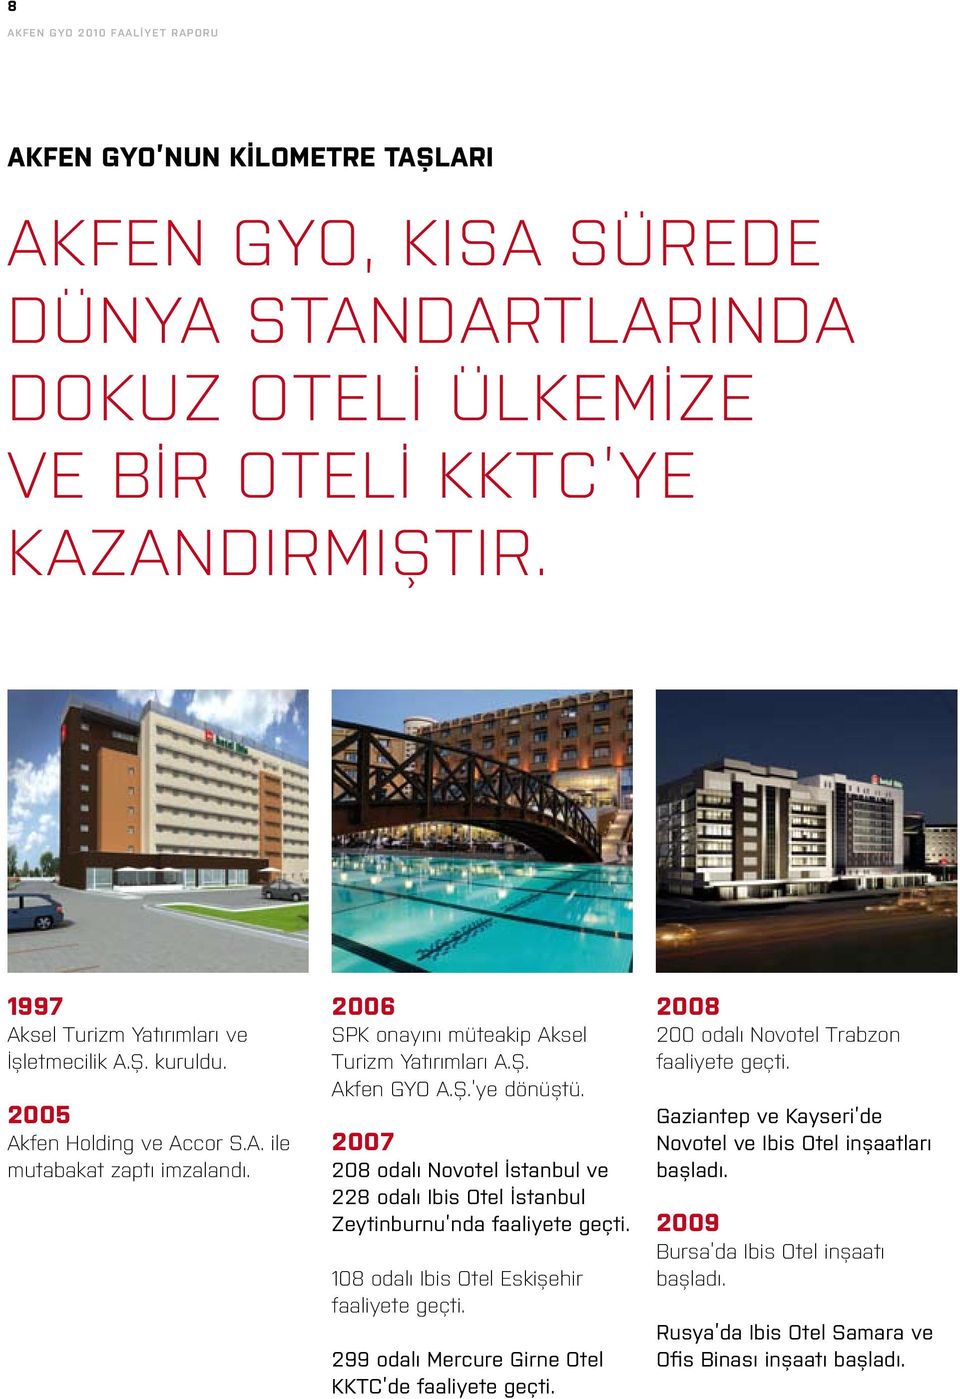 2007 208 odalı Novotel İstanbul ve 228 odalı Ibis Otel İstanbul Zeytinburnu nda faaliyete geçti. 108 odalı Ibis Otel Eskişehir faaliyete geçti.